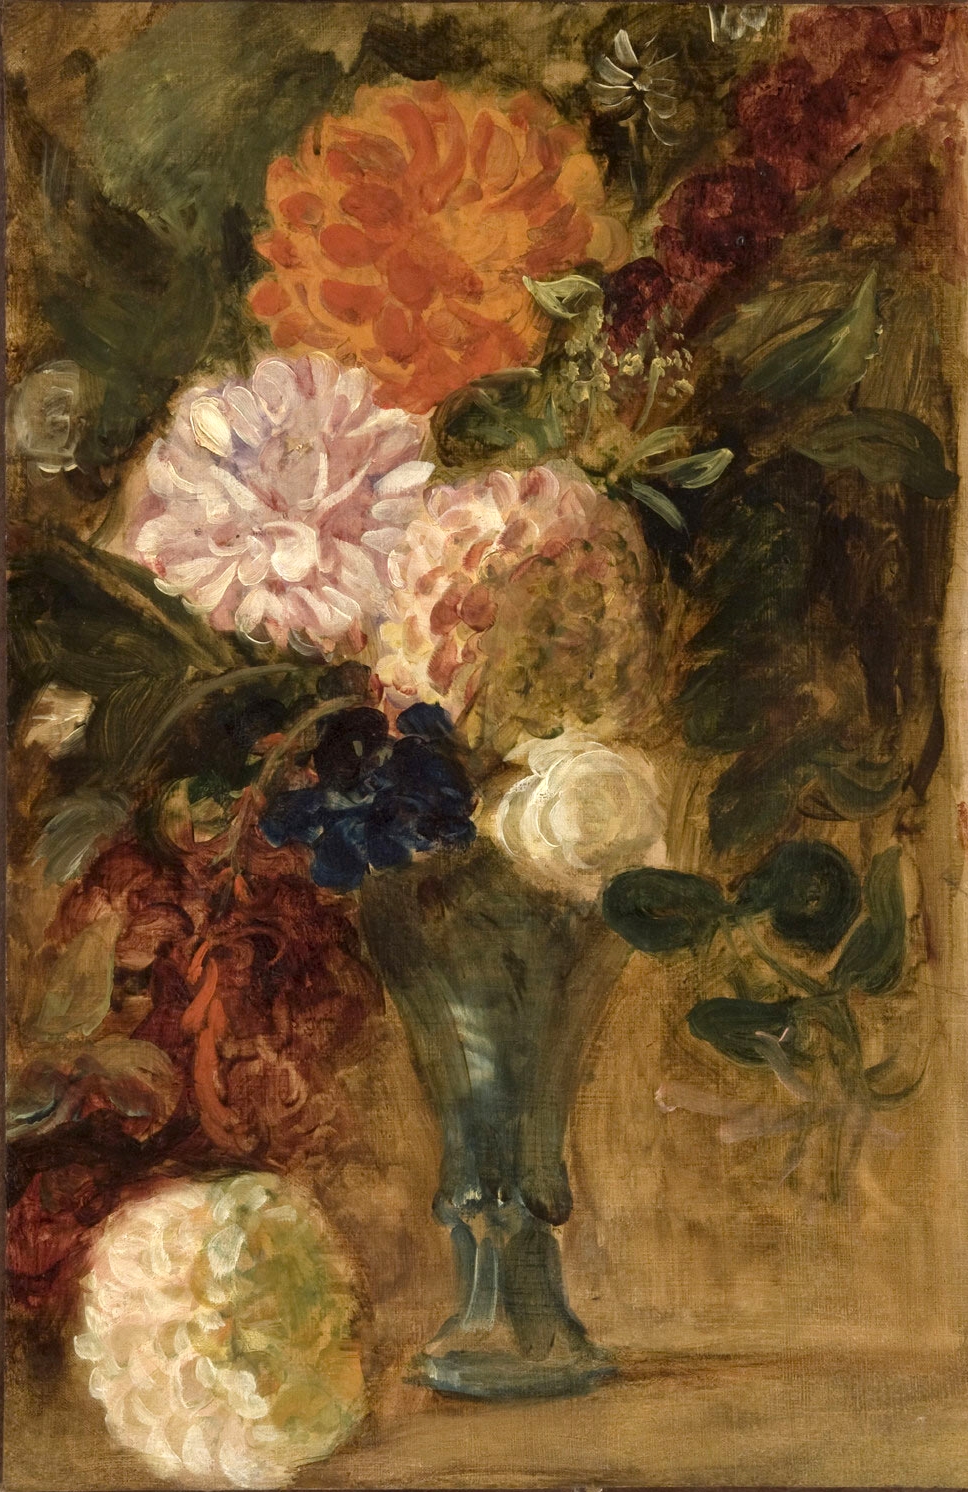 Eugene+Delacroix-1798-1863 (205).jpg